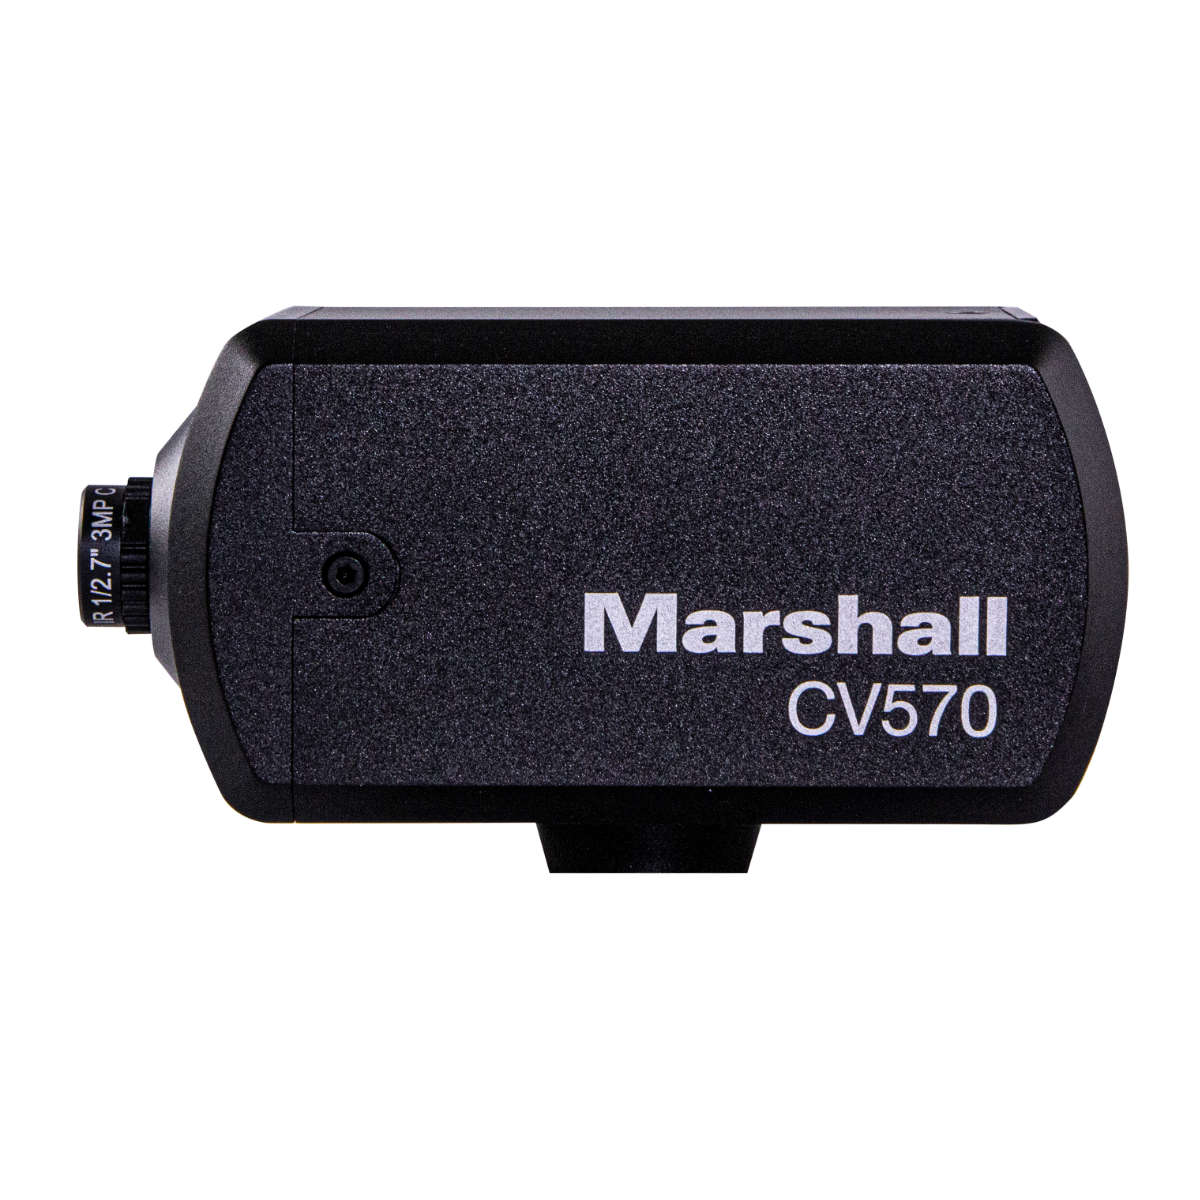 Marshall CV570